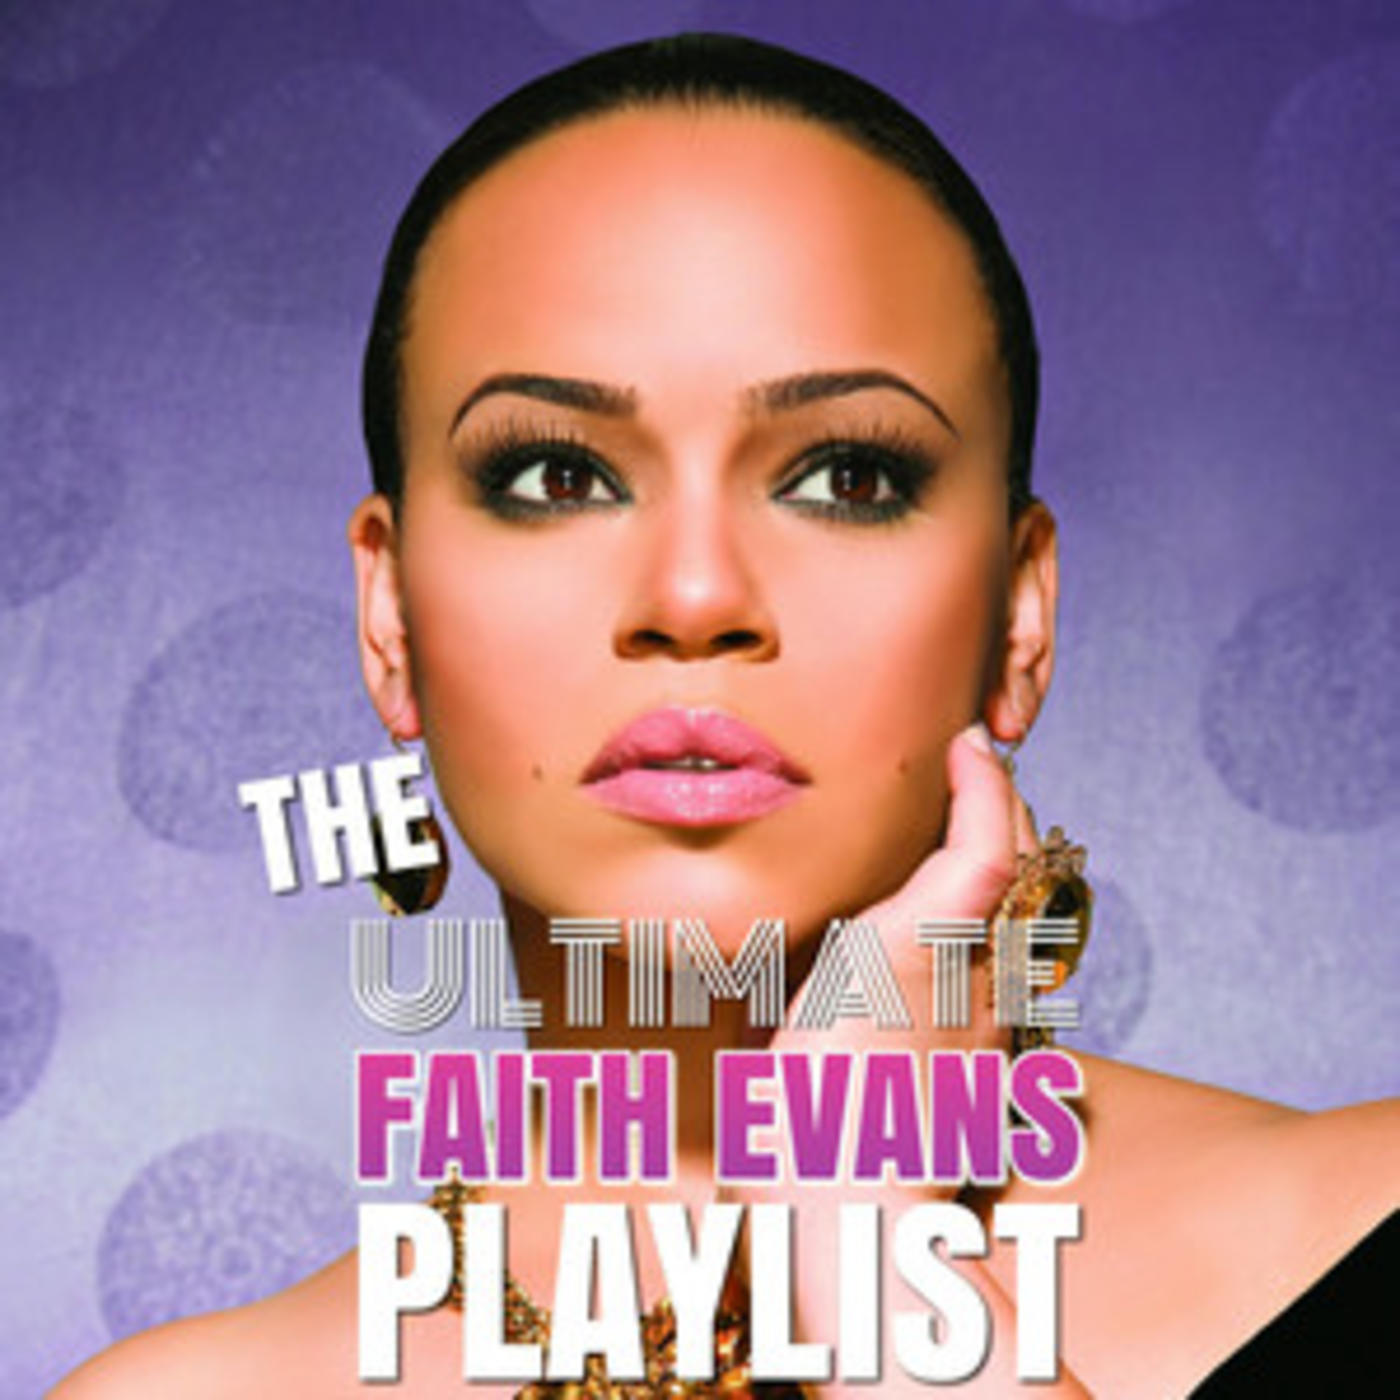 The Ultimate Faith Evans Playlist